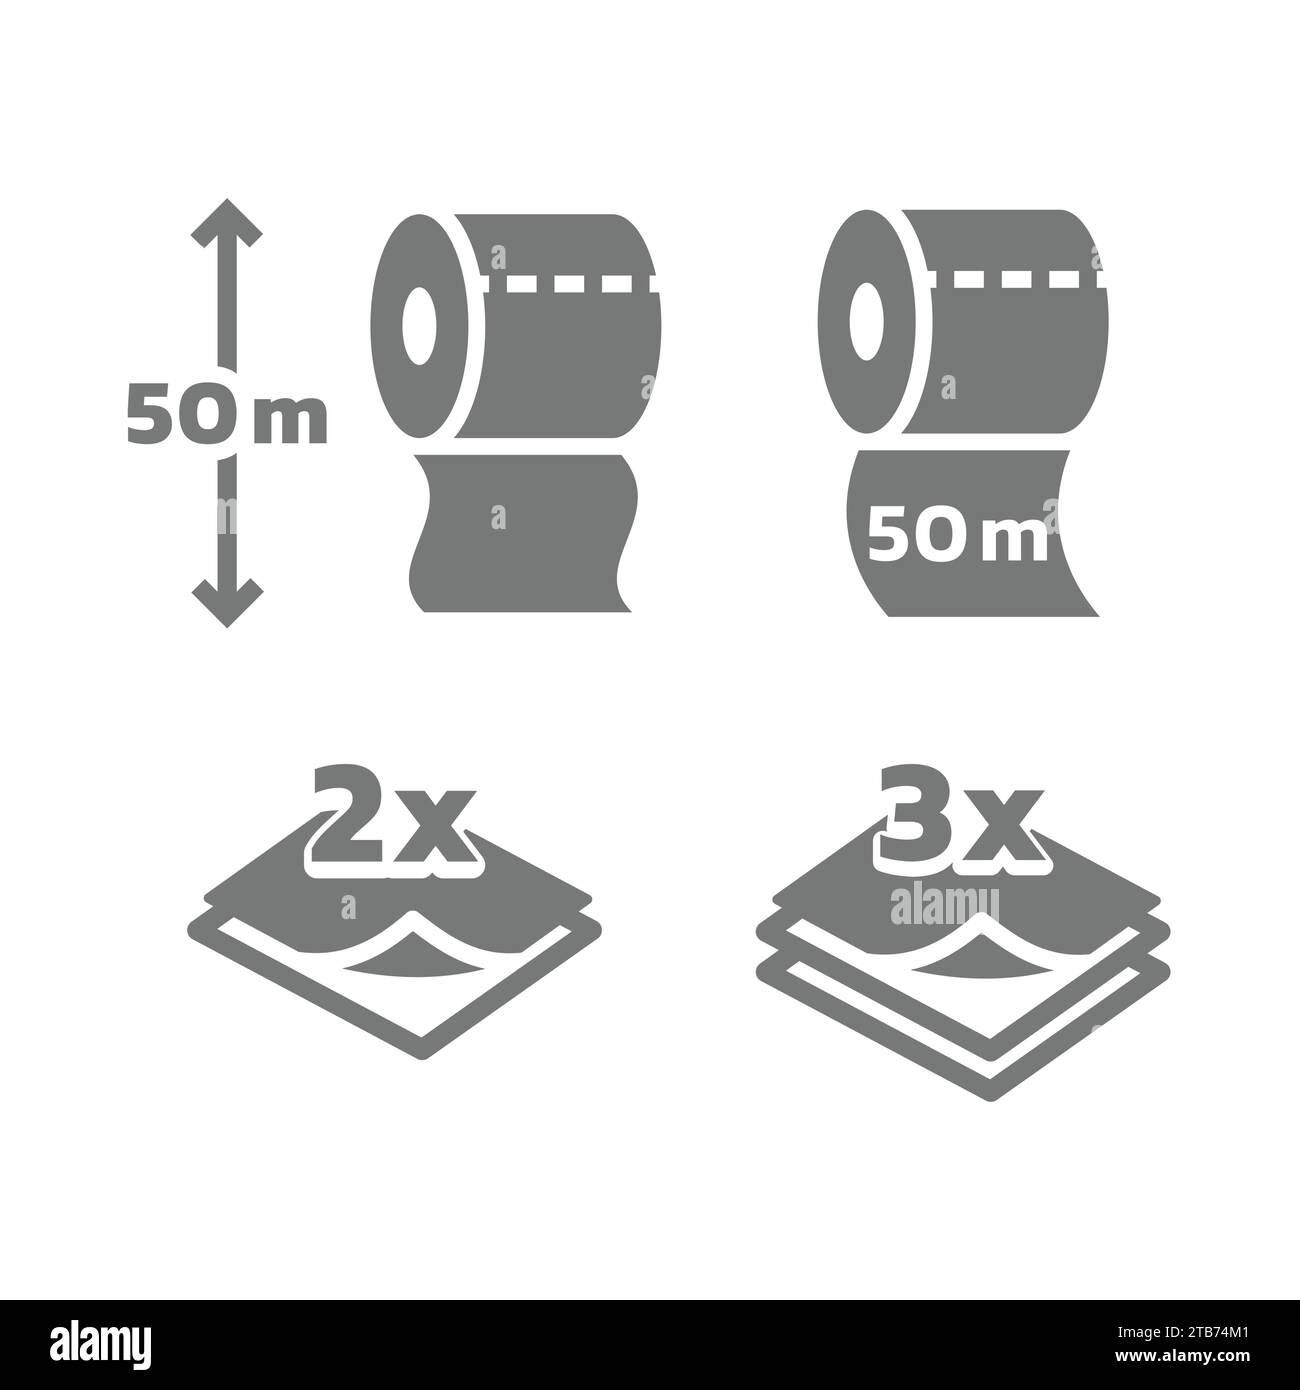 Longueur du rouleau de papier toilette et jeu d'icônes vectorielles de 2 et 3 couches. icônes de papier en rouleau de 50 mètres de long. Illustration de Vecteur